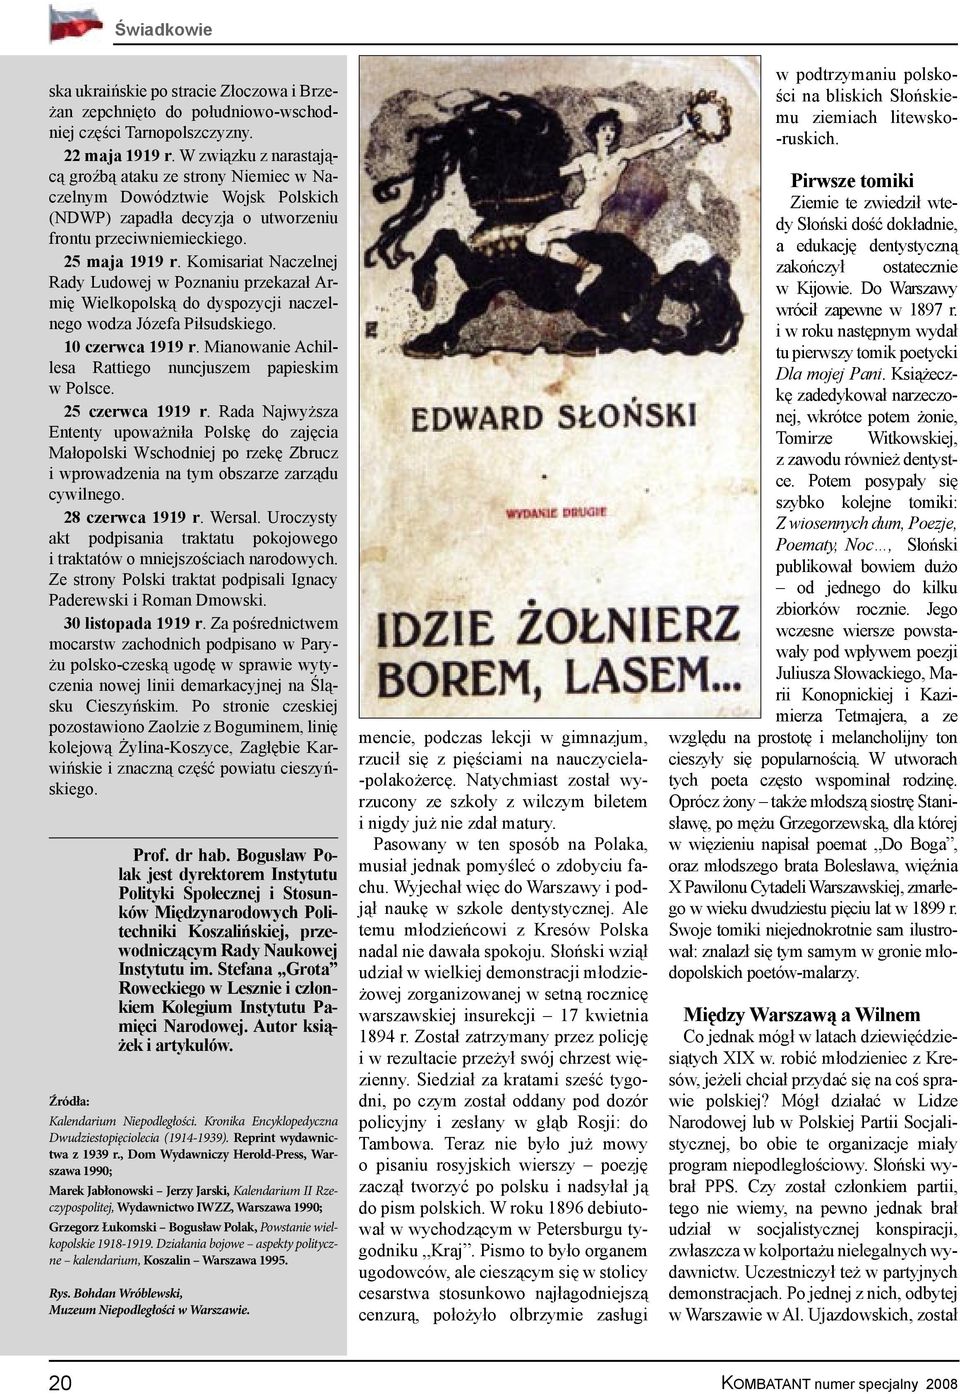 Komisariat Naczelnej Rady Ludowej w Poznaniu przekazał Armię Wielkopolską do dyspozycji naczelnego wodza Józefa Piłsudskiego. 10 czerwca 1919 r.